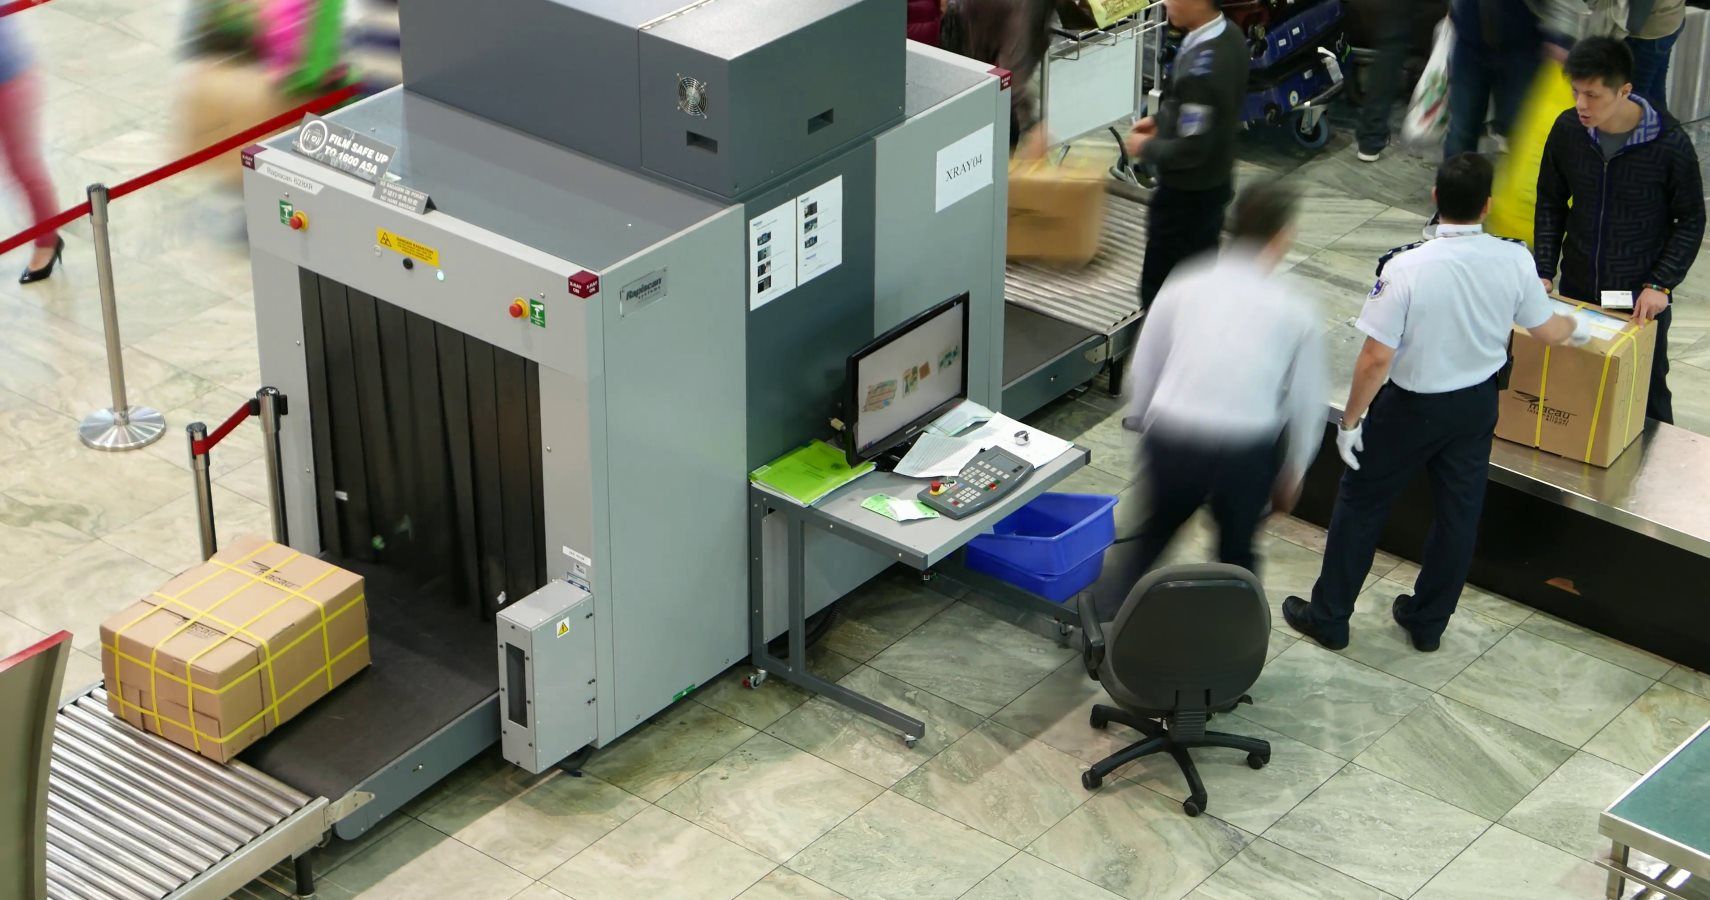 Novos scanners podem significar o fim da proibição de líquidos na segurança do aeroporto